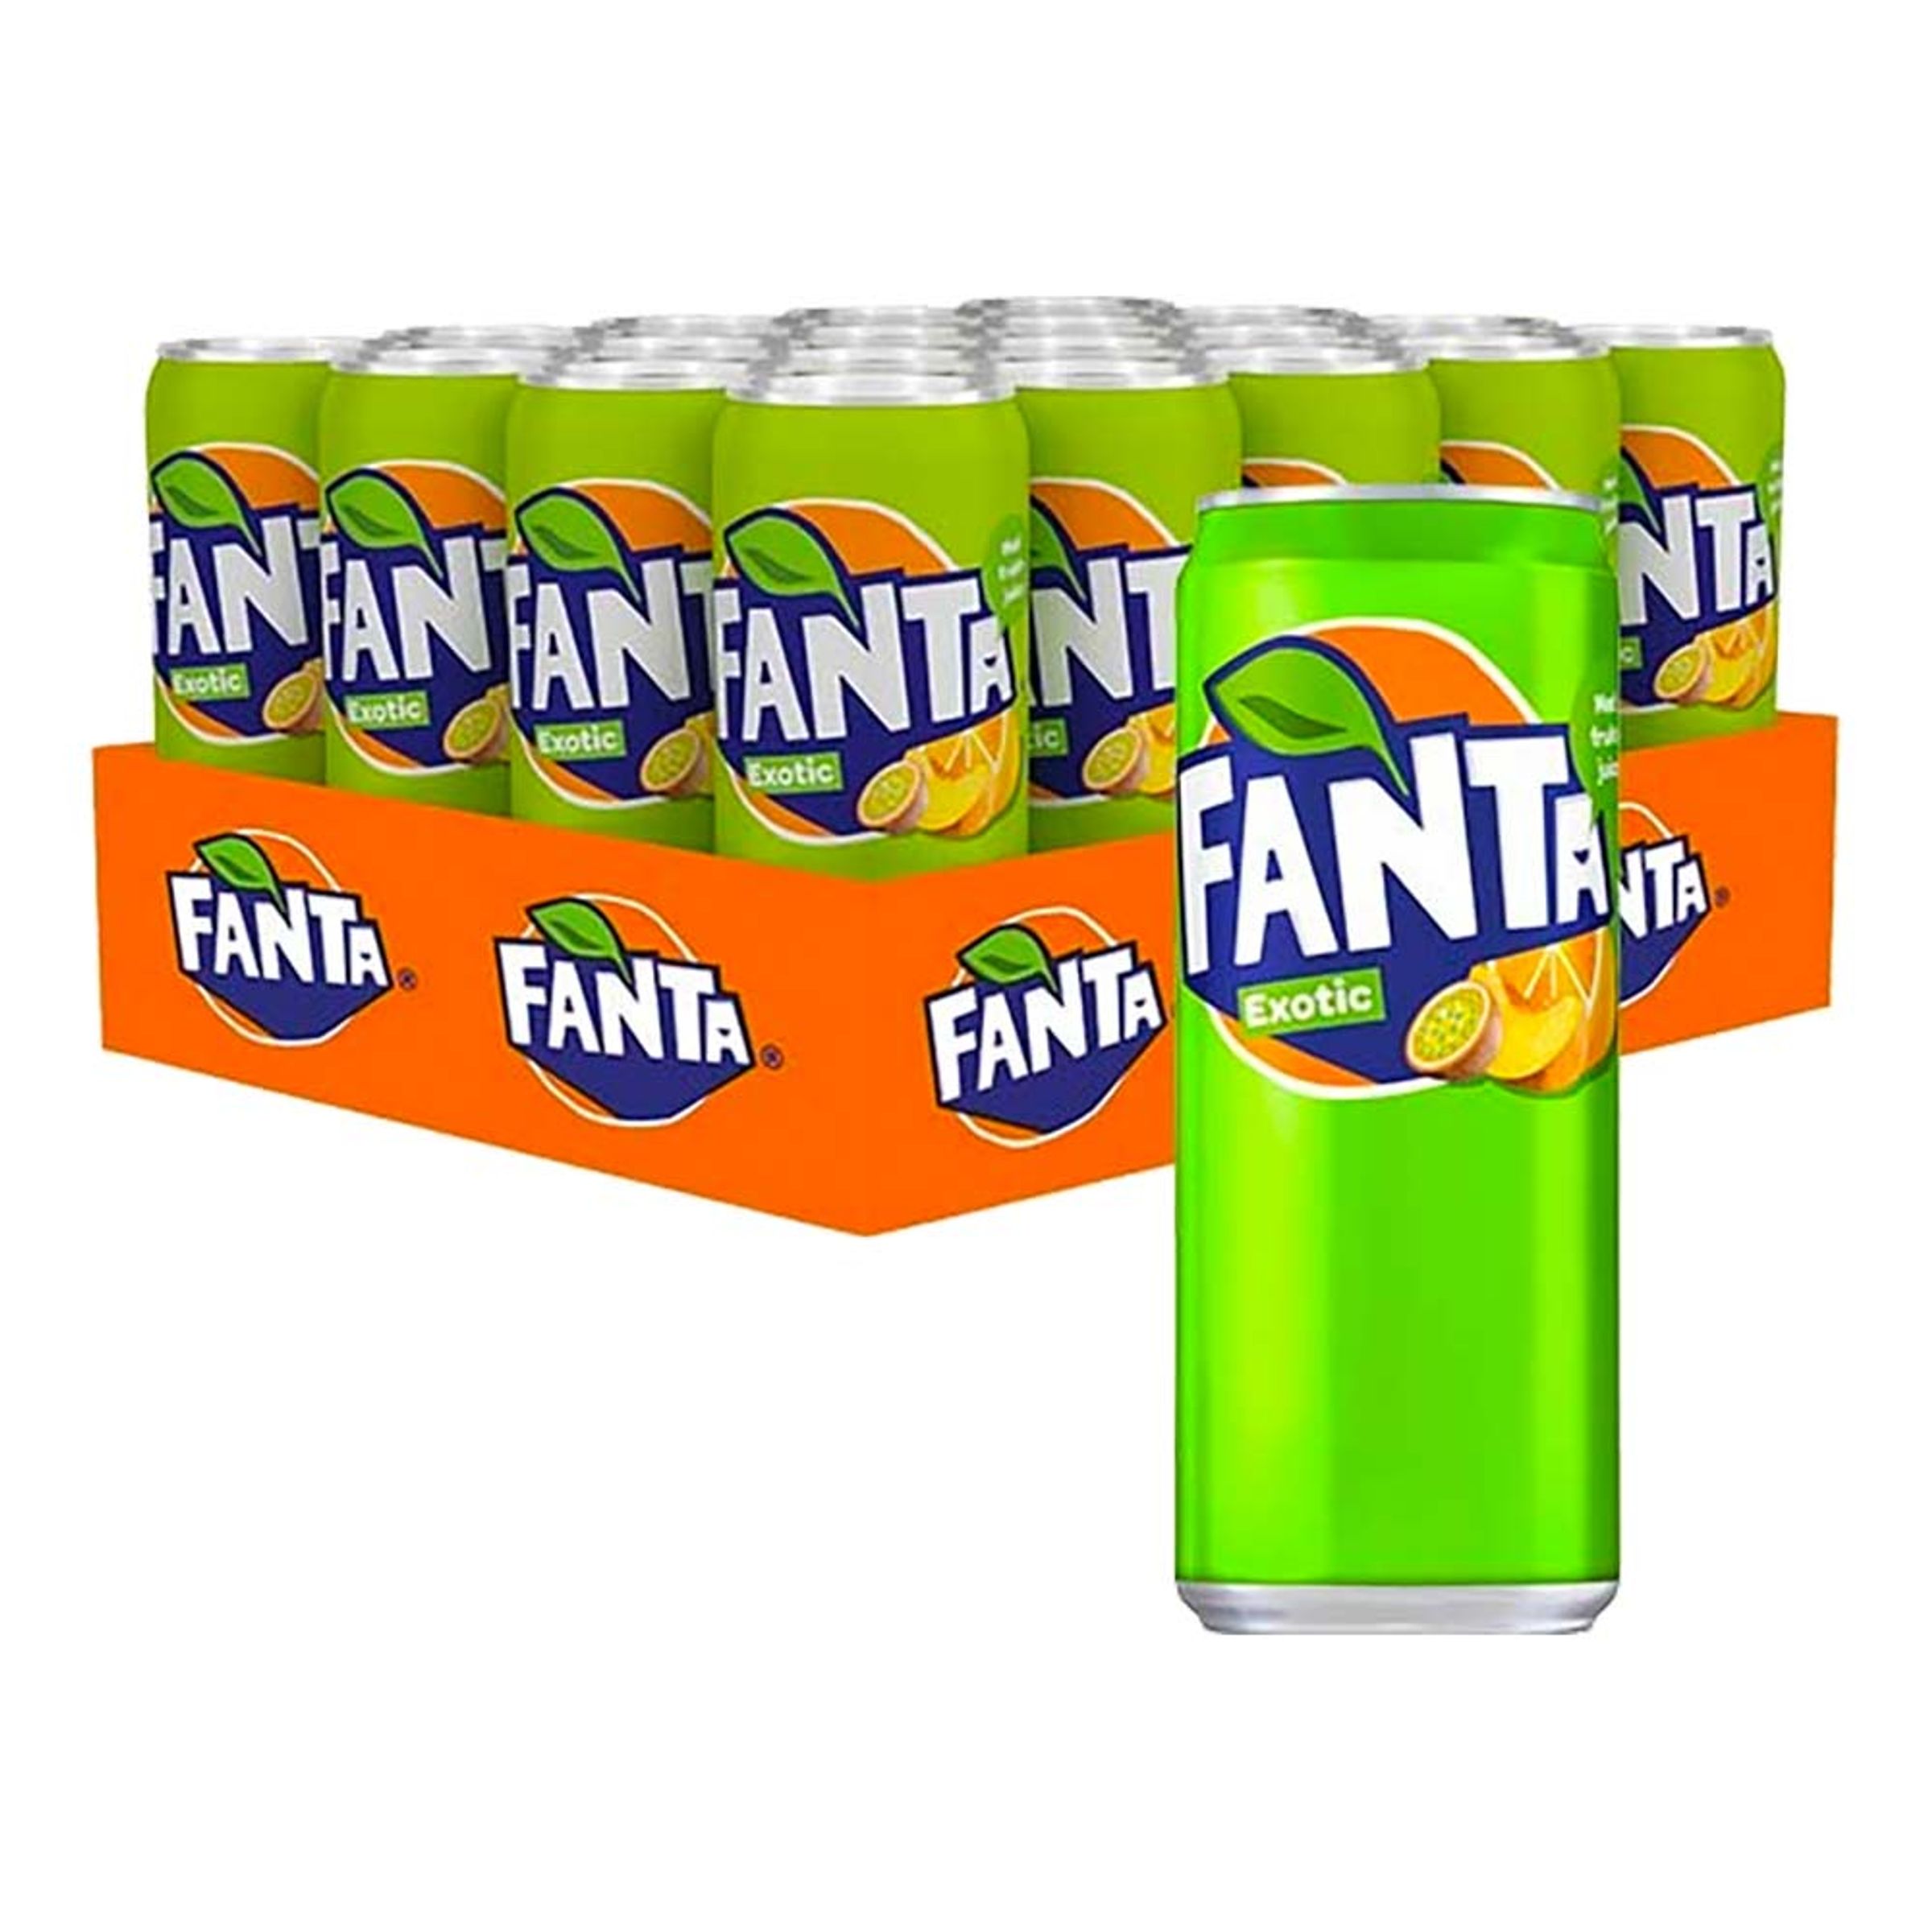 Fanta Exotic - 20-pack